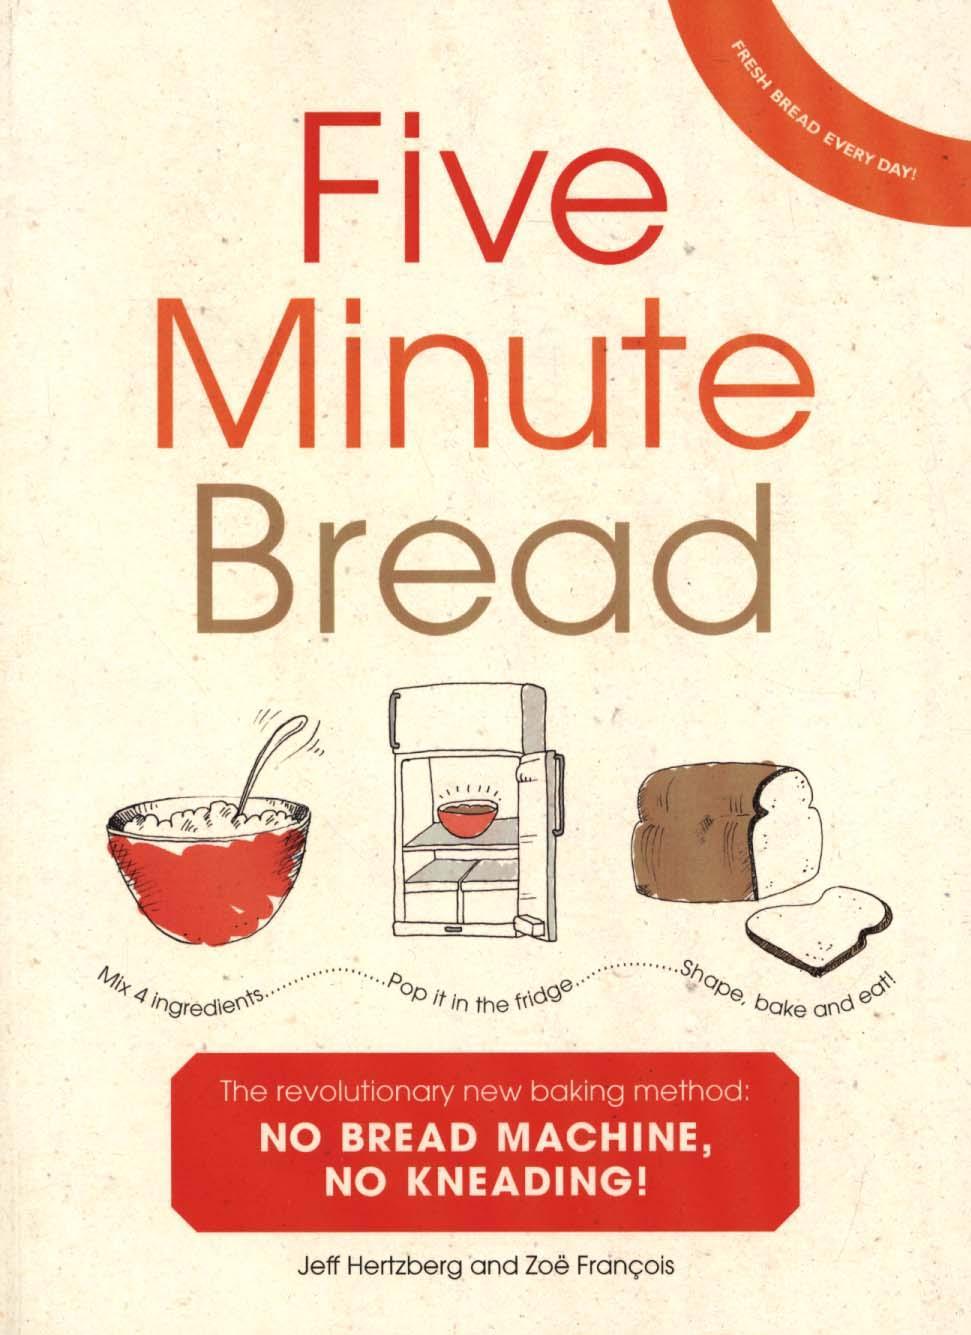 Five Minute Bread